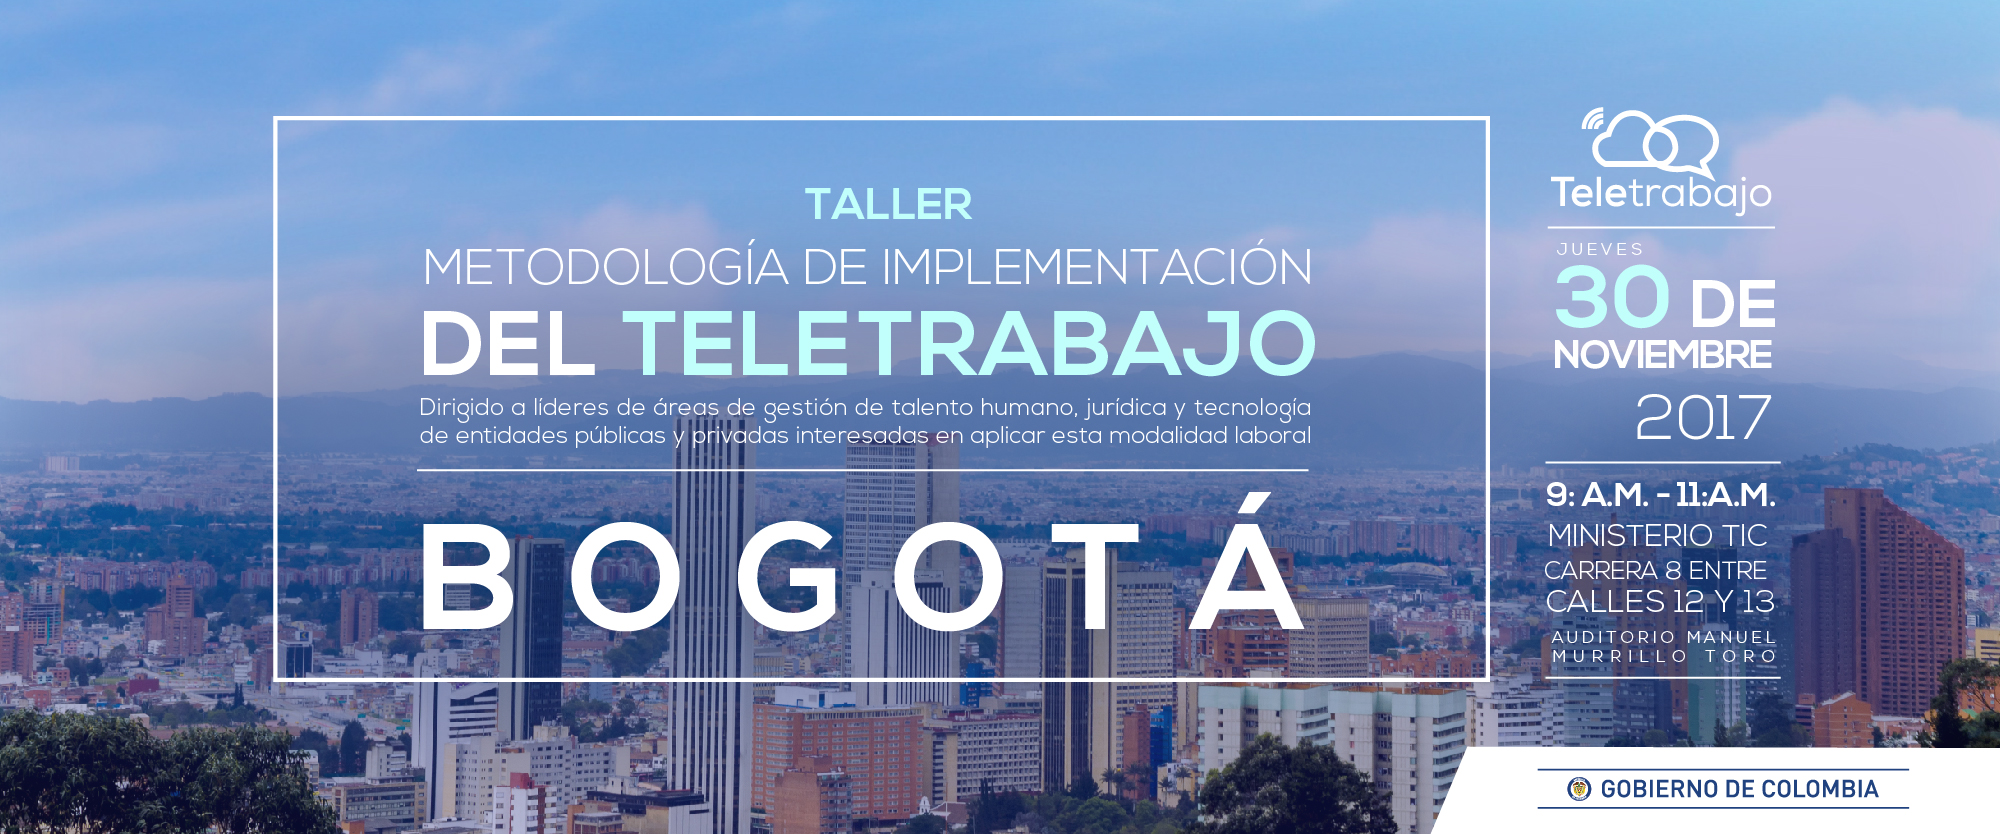 Nuevo Taller de Teletrabajo para Bogotá